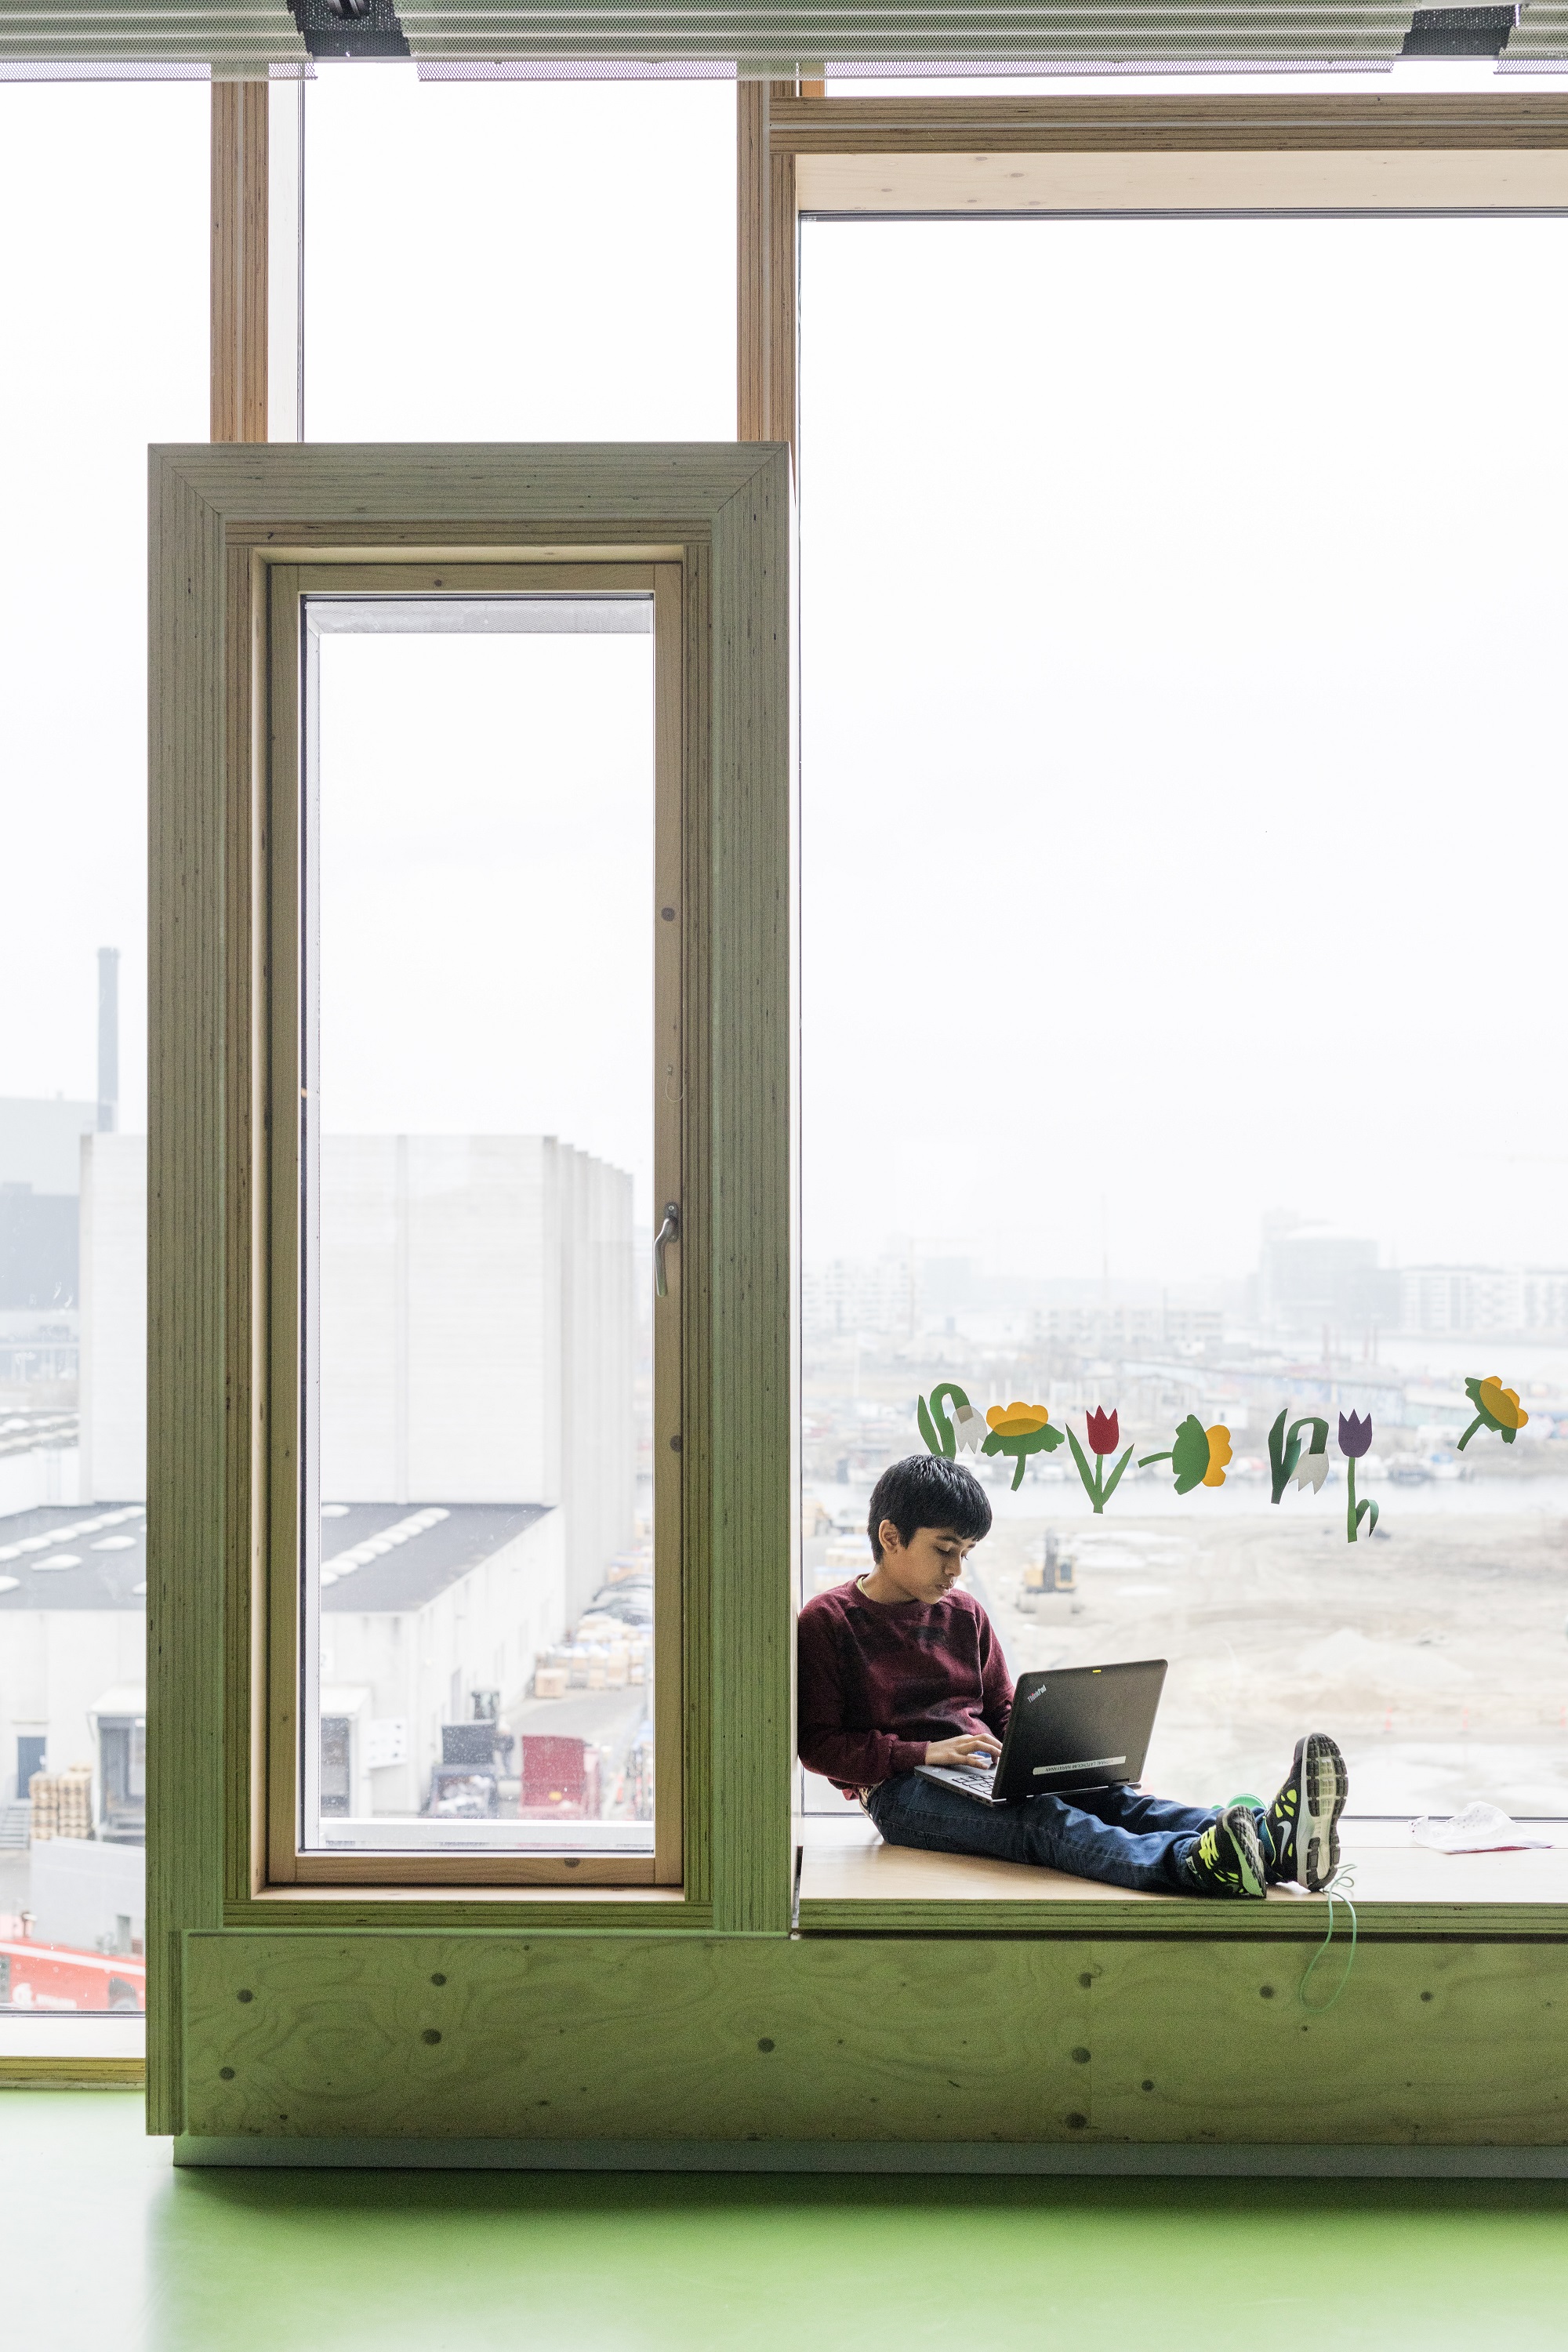 Window elements. Школа HQROOM Копенгаген. Вид из окна школы. Школьный класс окно. Школьный класс вид из окна.